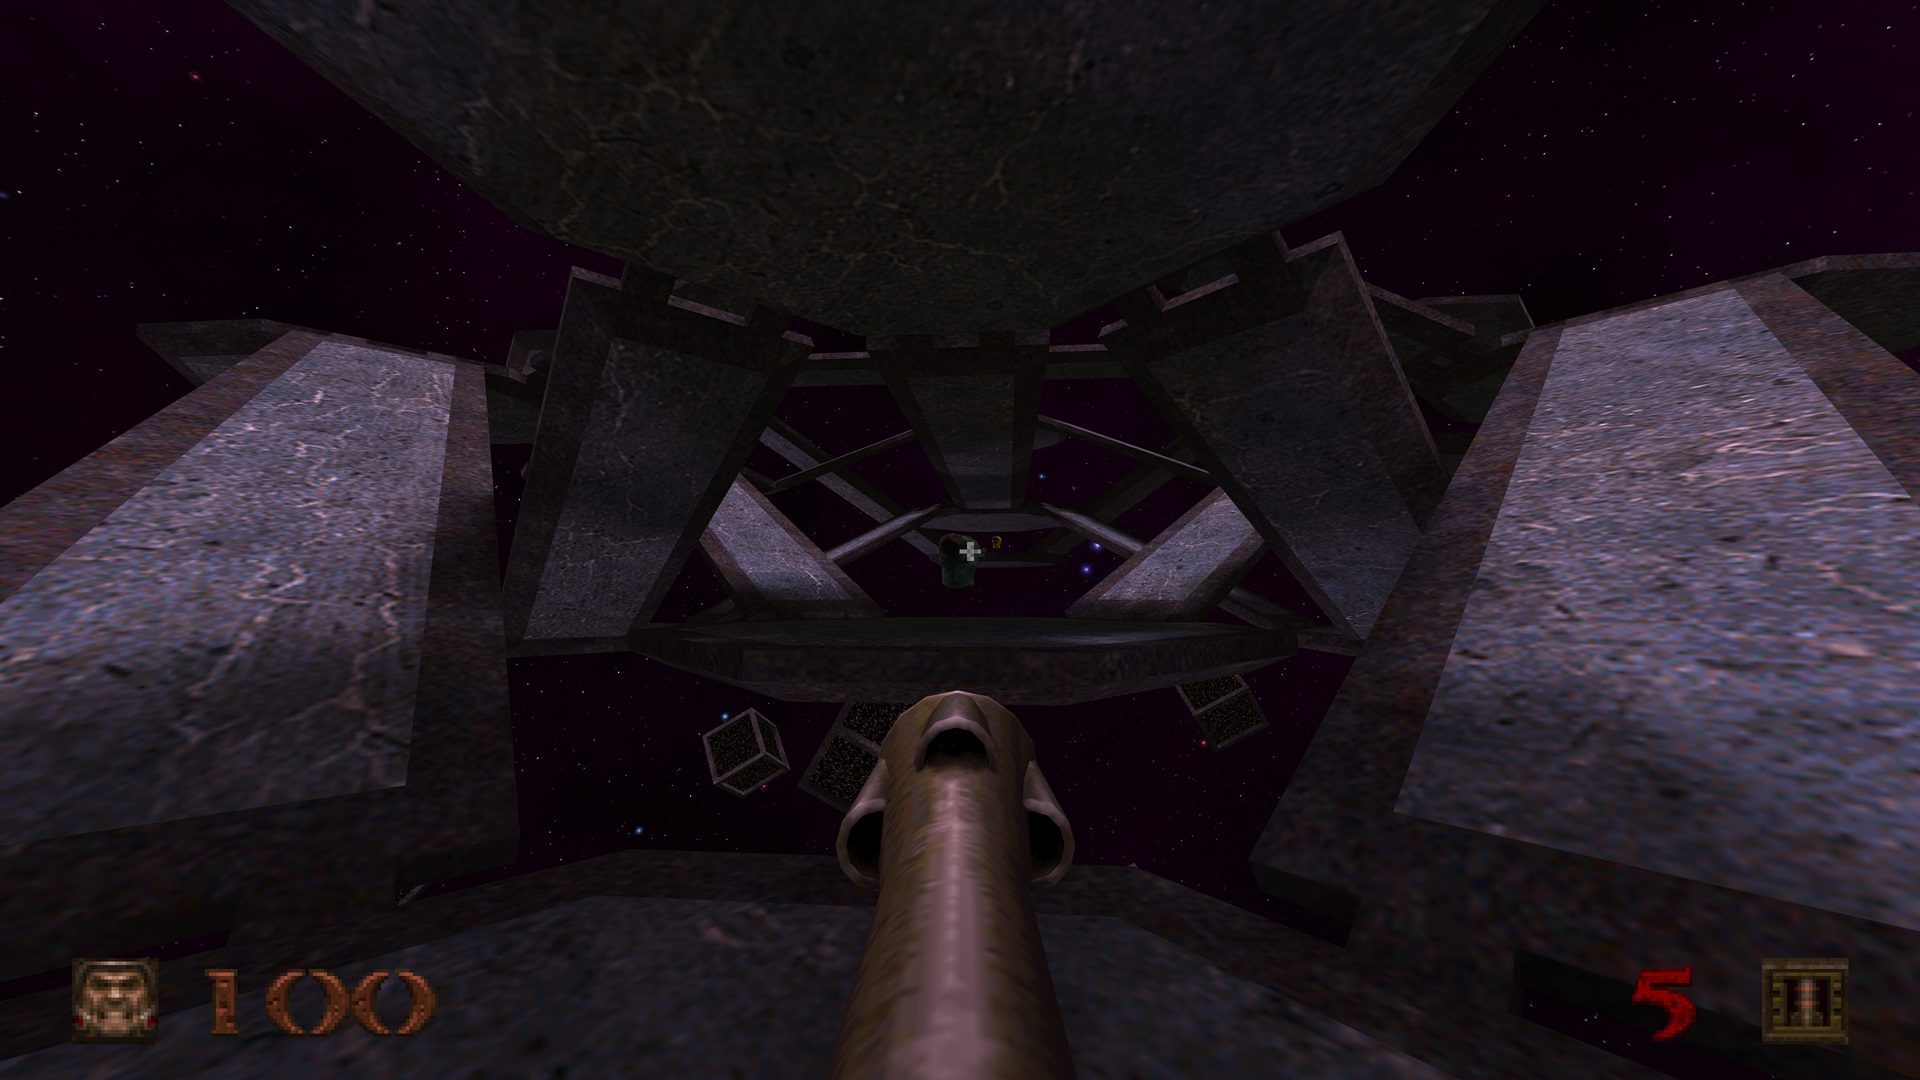 Análisis de Quake Remastered - Si DOOM es el rey, Quake es el príncipe de los shooters y ha vuelto de entre los muertos con una gran remasterización.